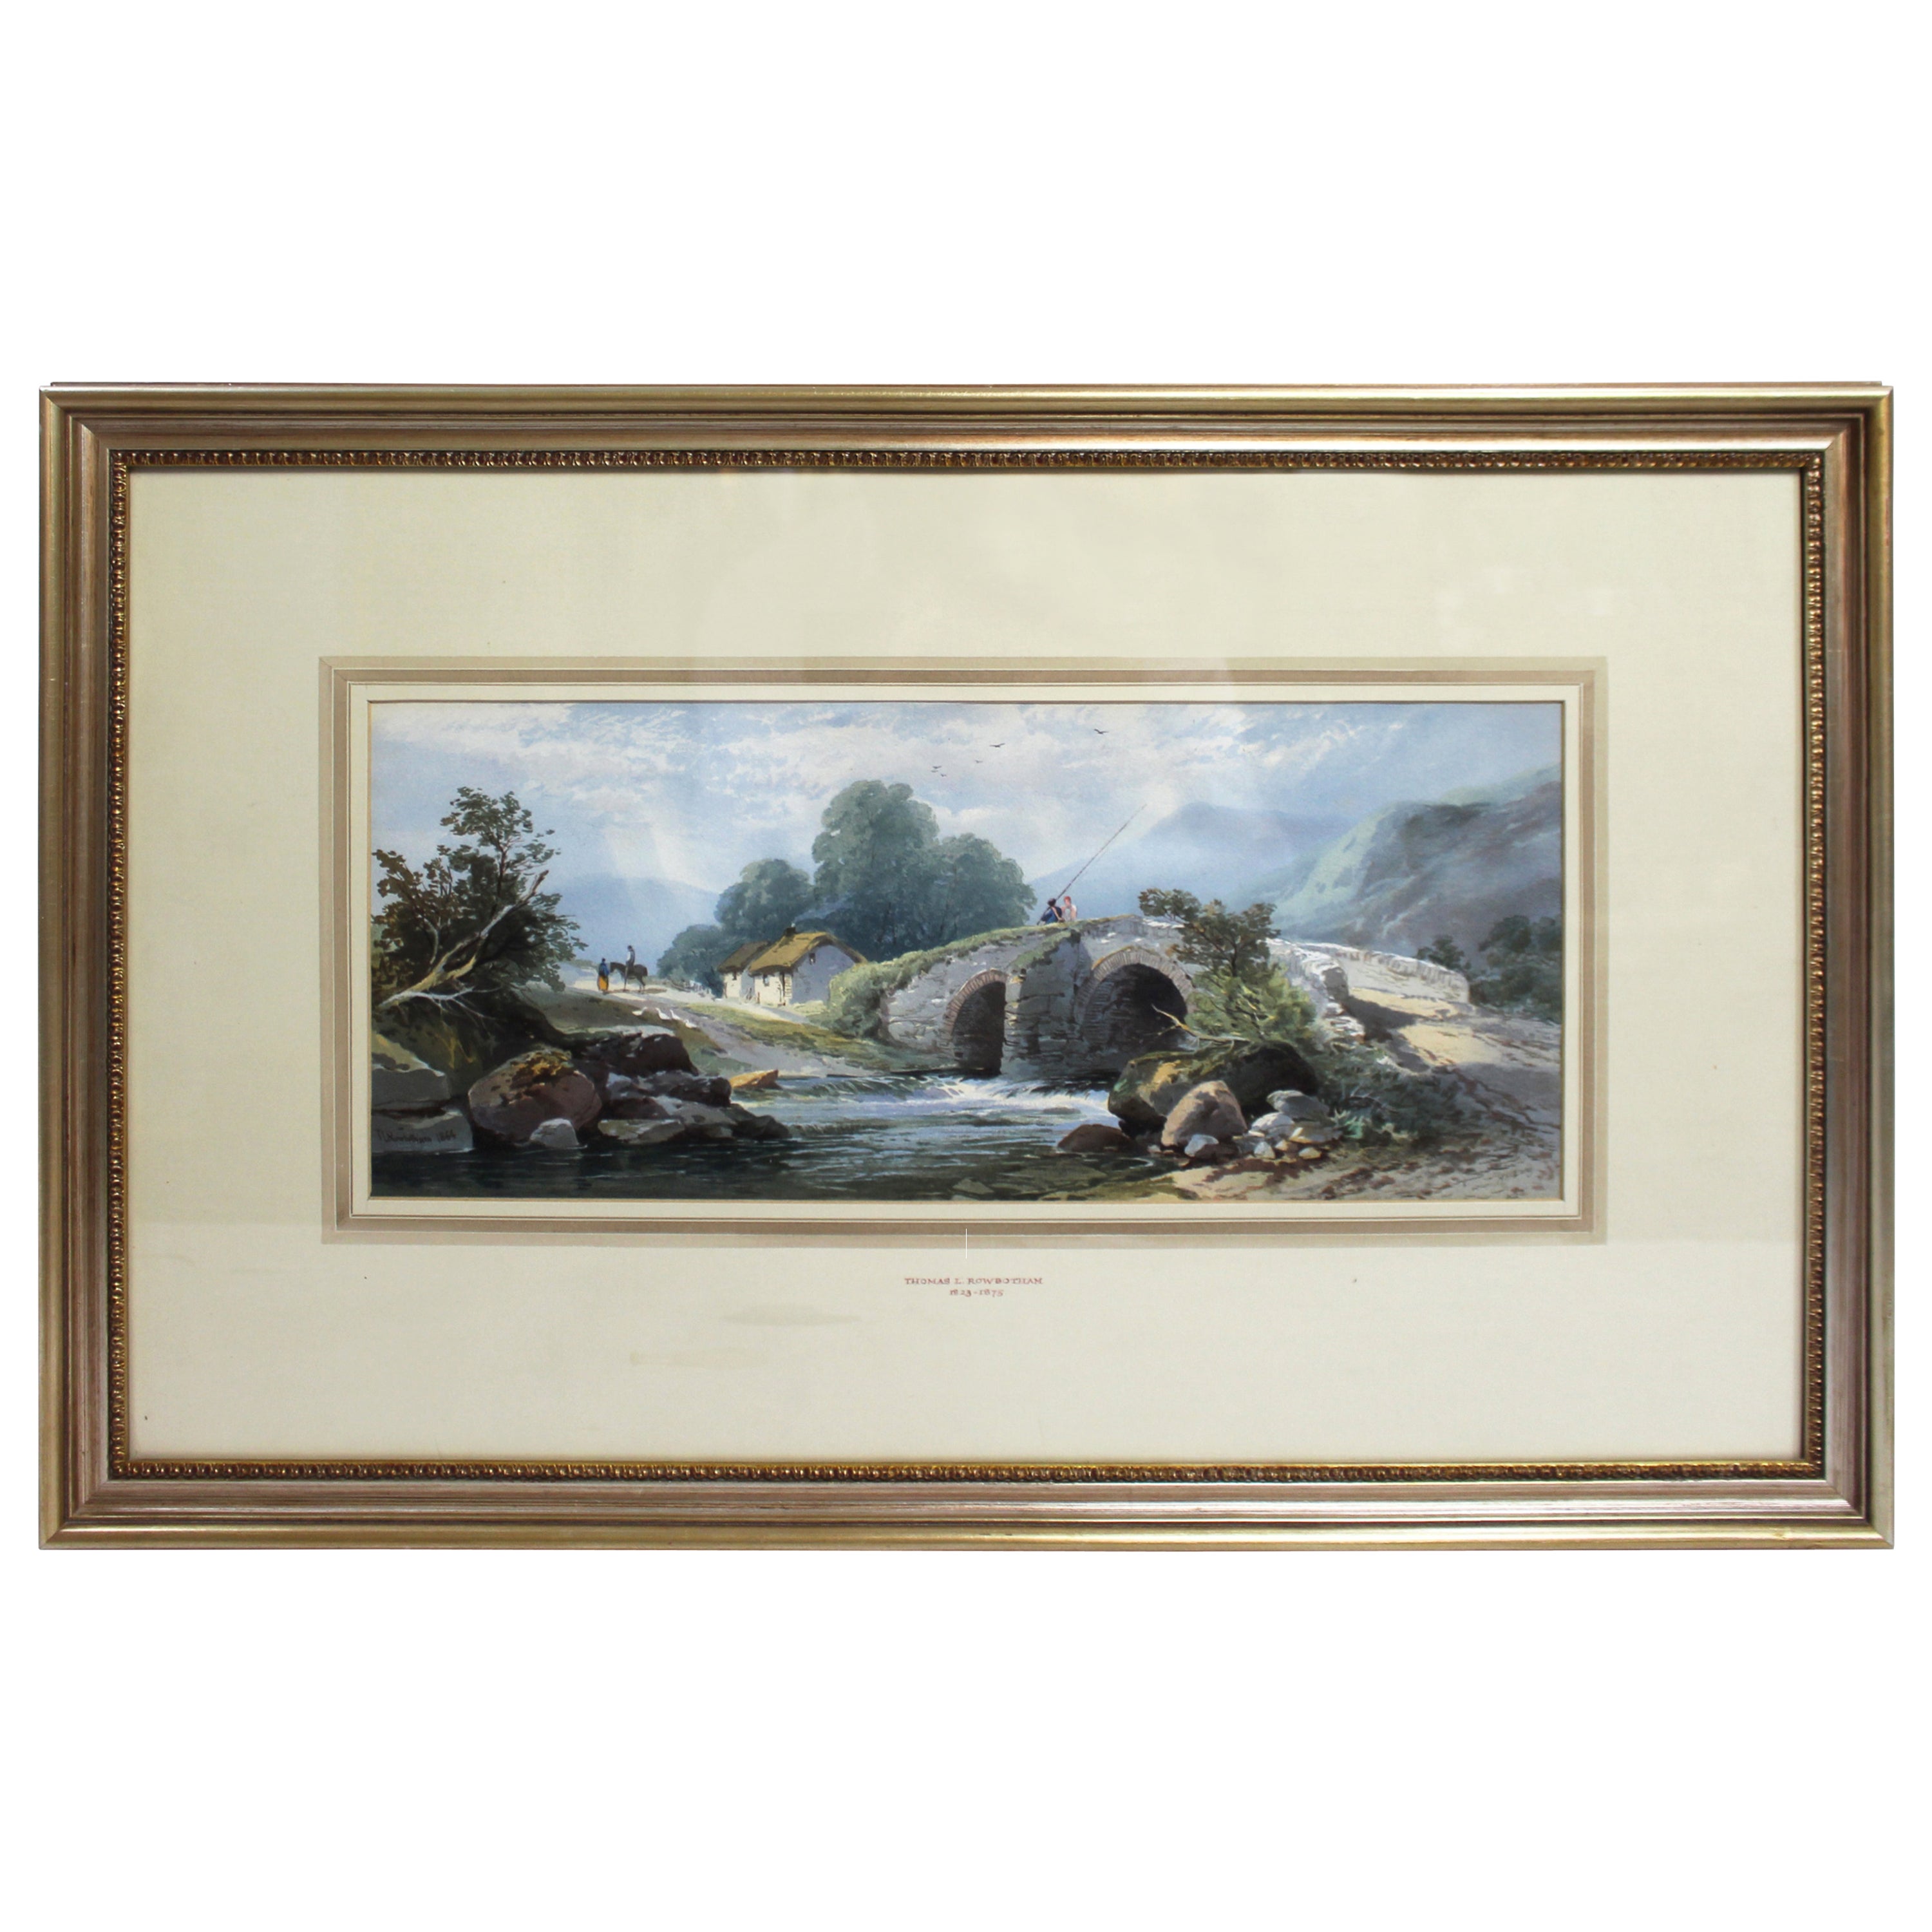 Watercolour Landscape by Thomas Rowbotham 'Irish, 1823-1875'